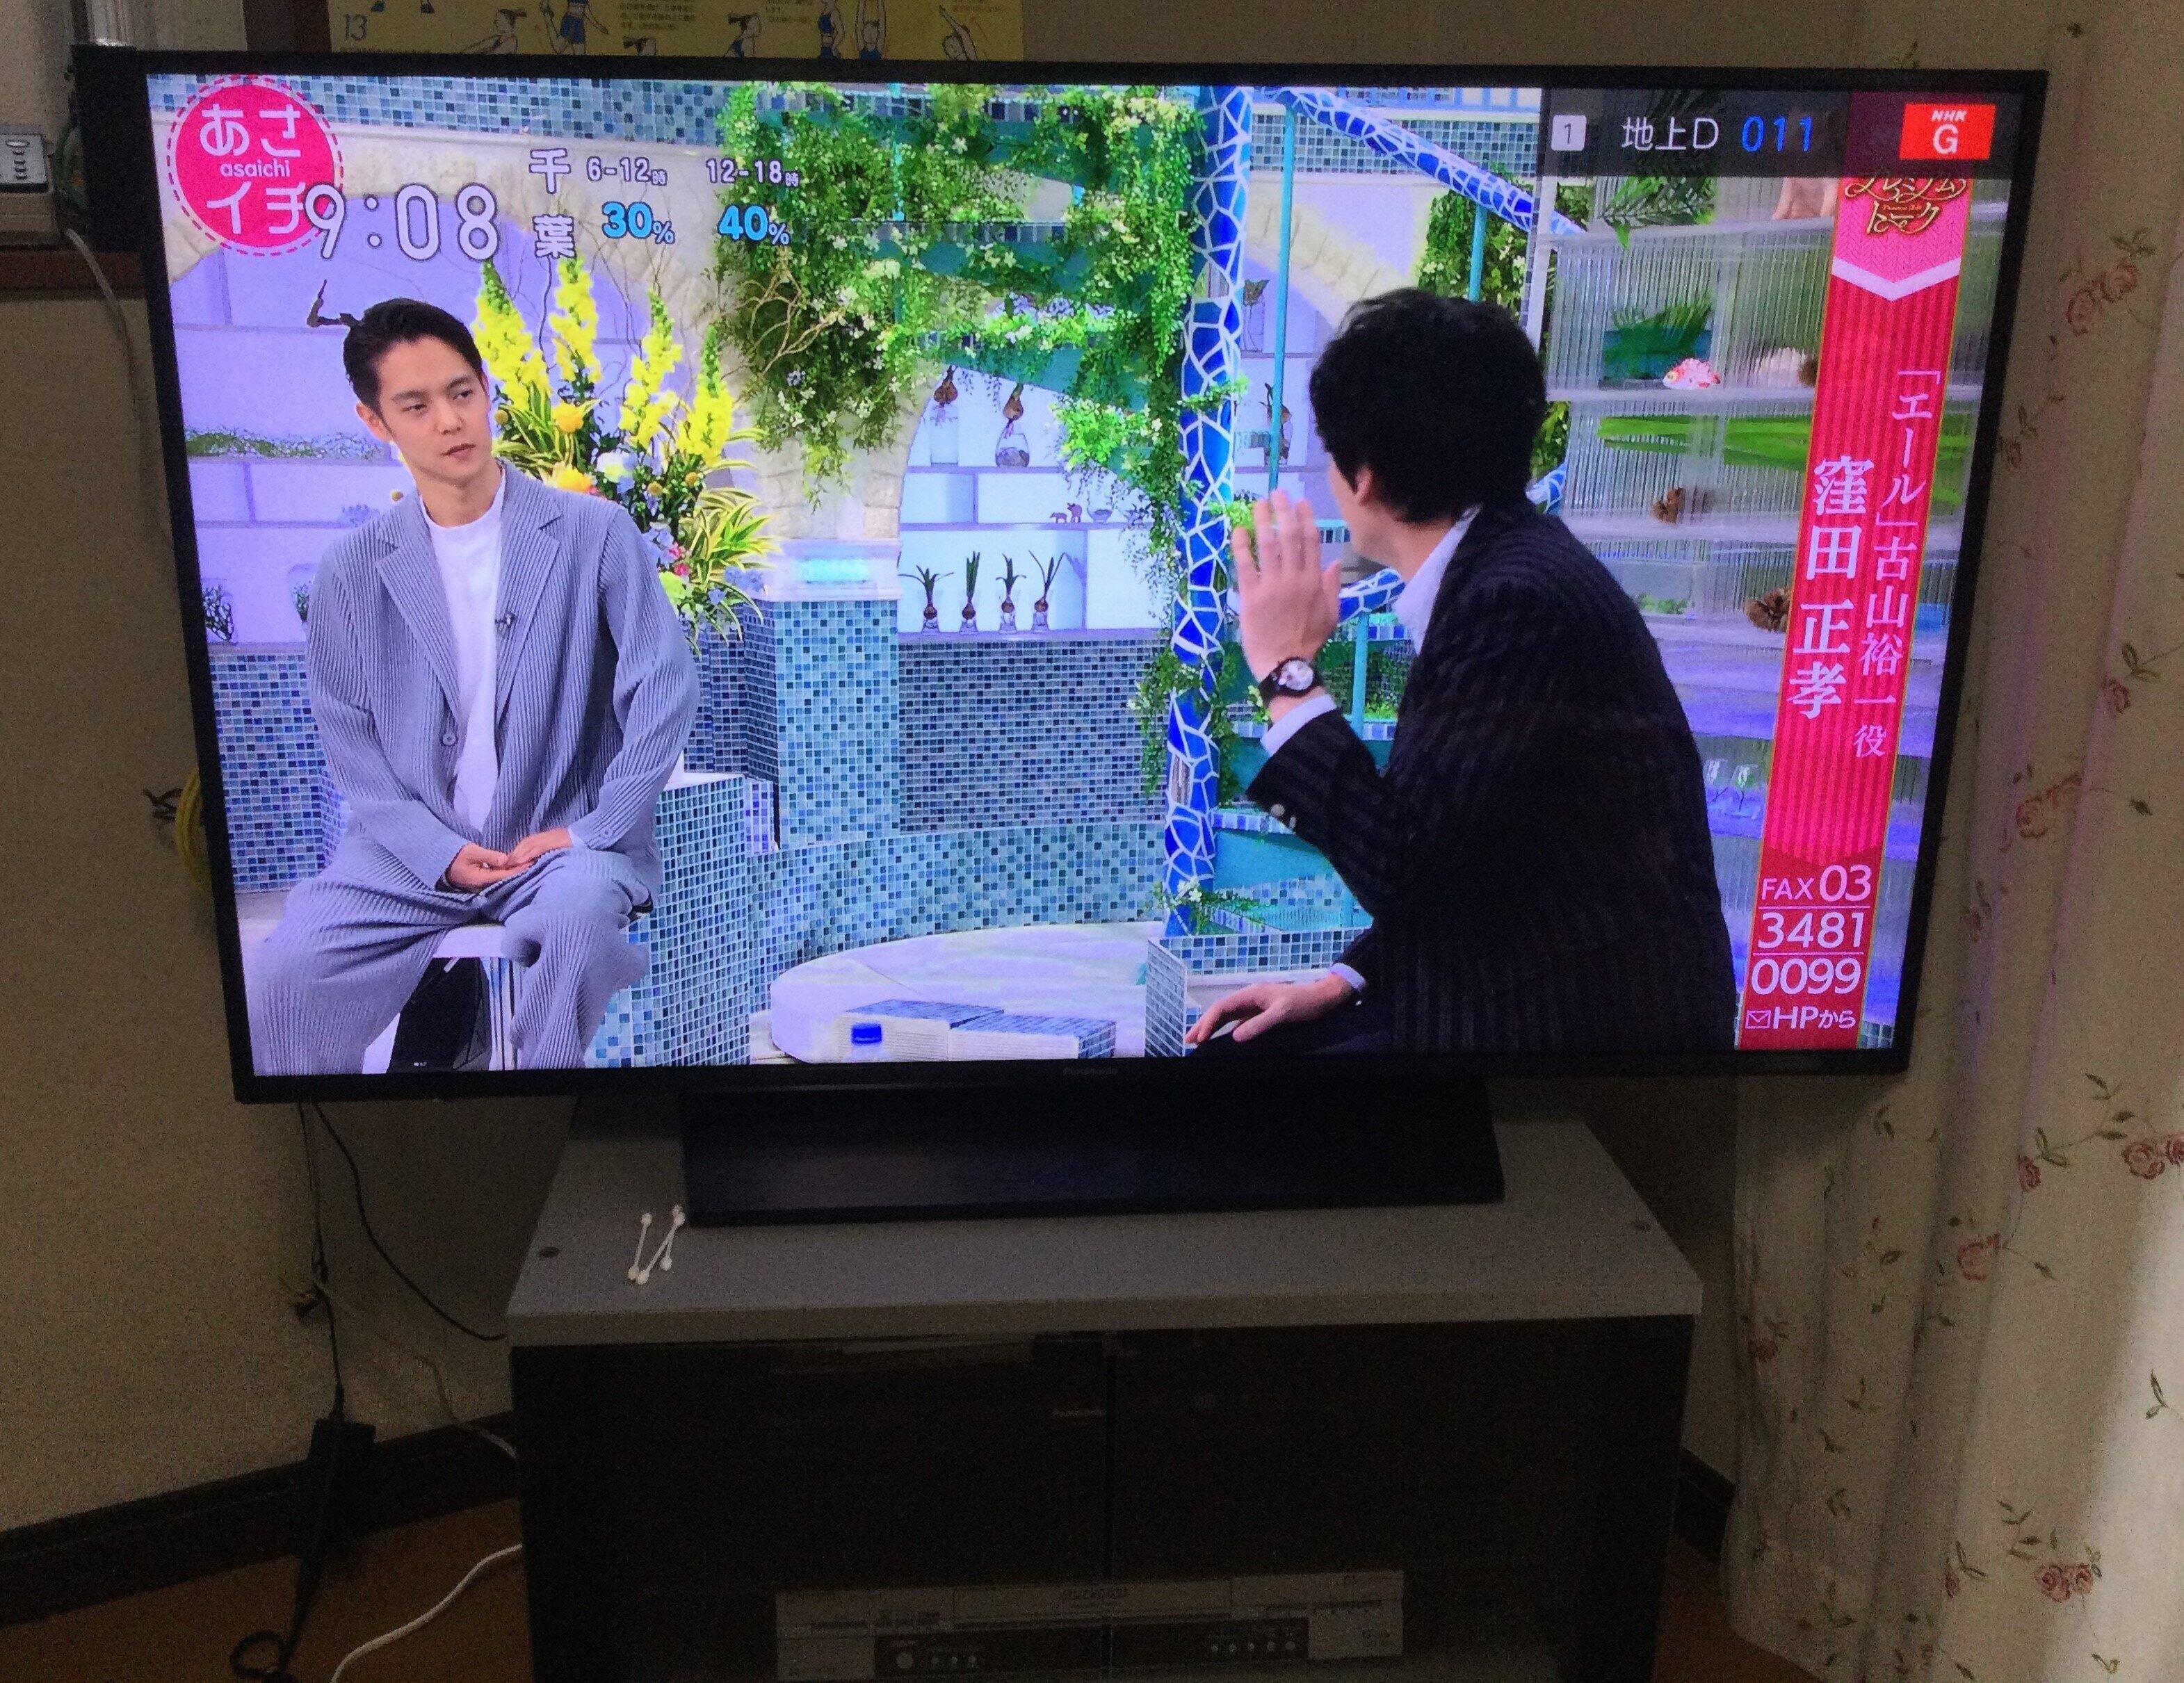 NHKを見ている人ばかりとは限らない